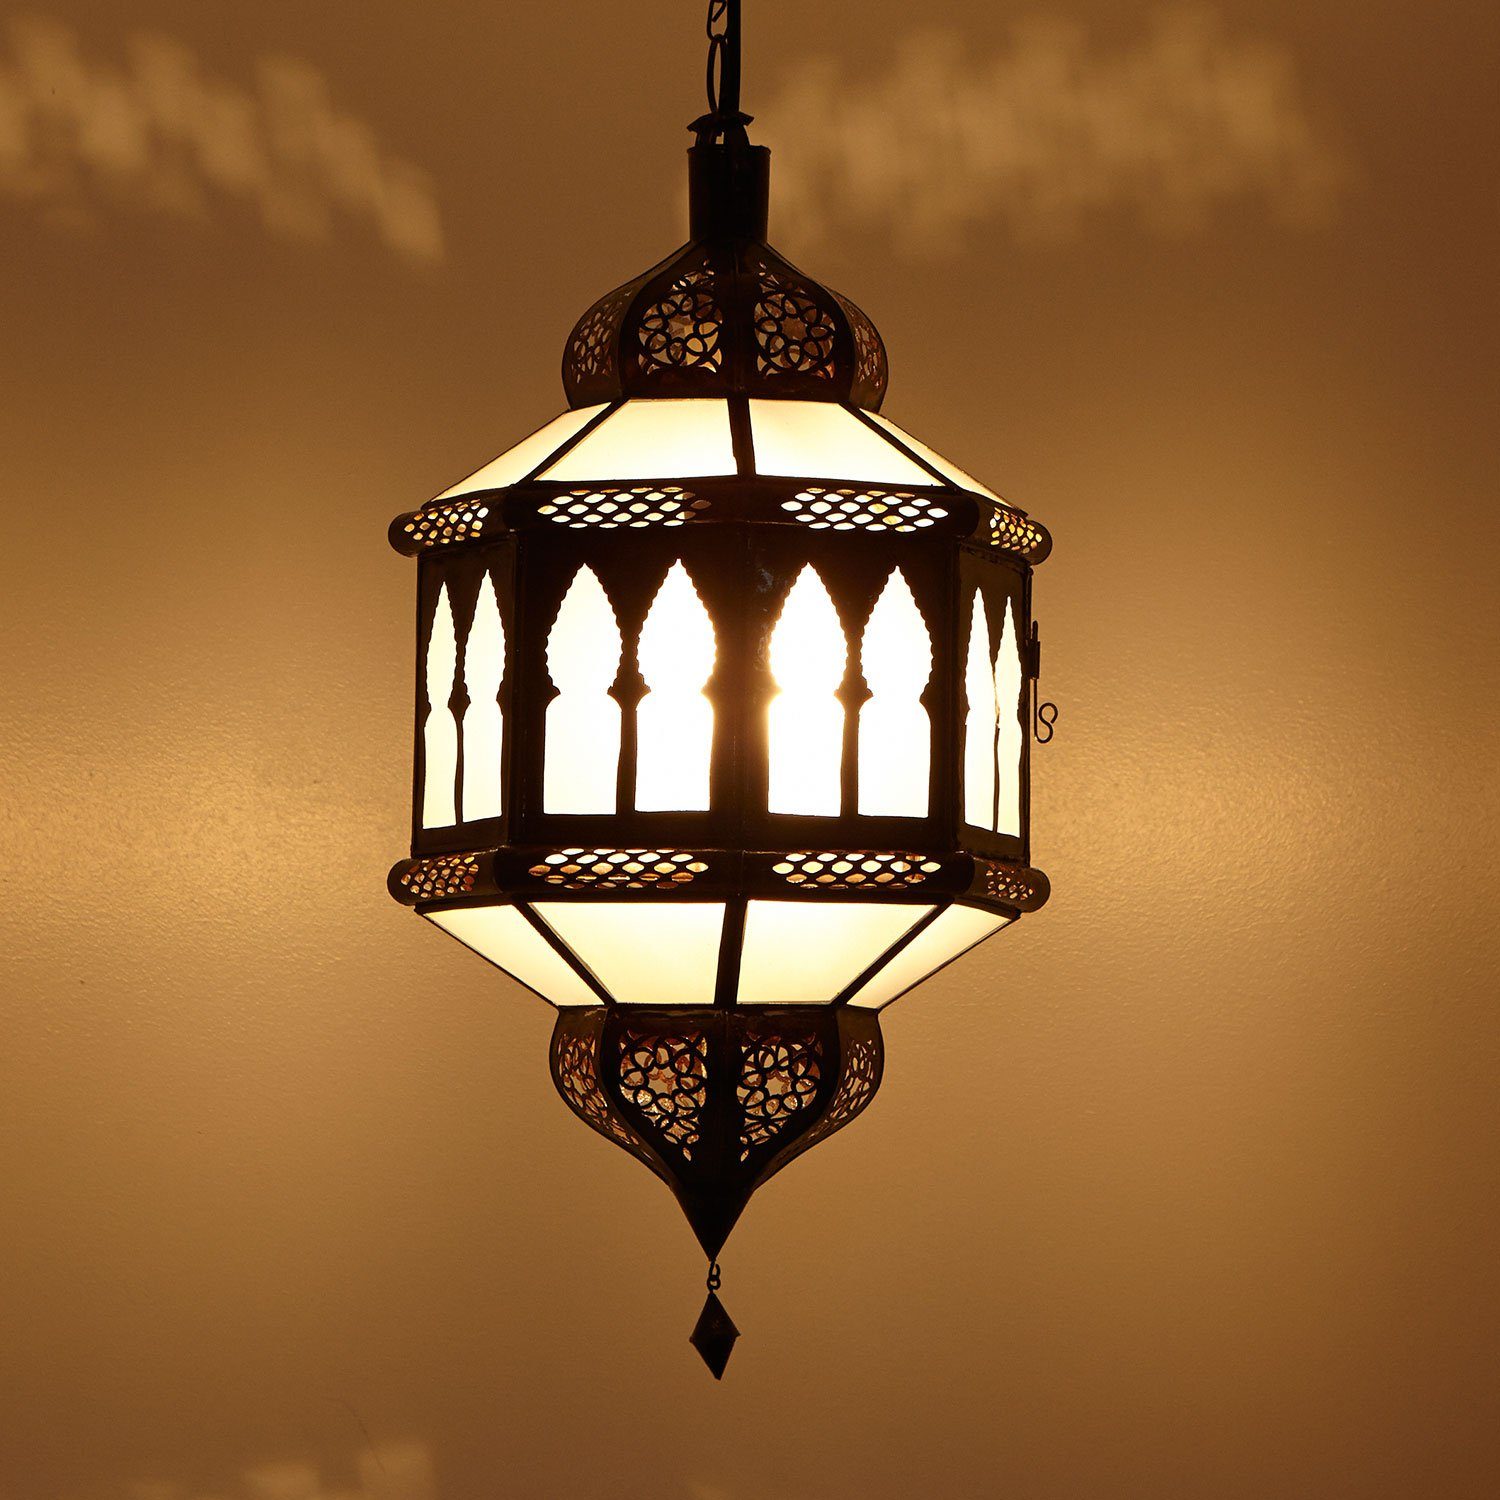 Casa Moro Hängeleuchte Marokkanische Lampe Trombia Biban Milch-Weiß H 50 cm, ohne Leuchtmittel, Handmade, Kunsthandwerk aus Marrakesch, L1358